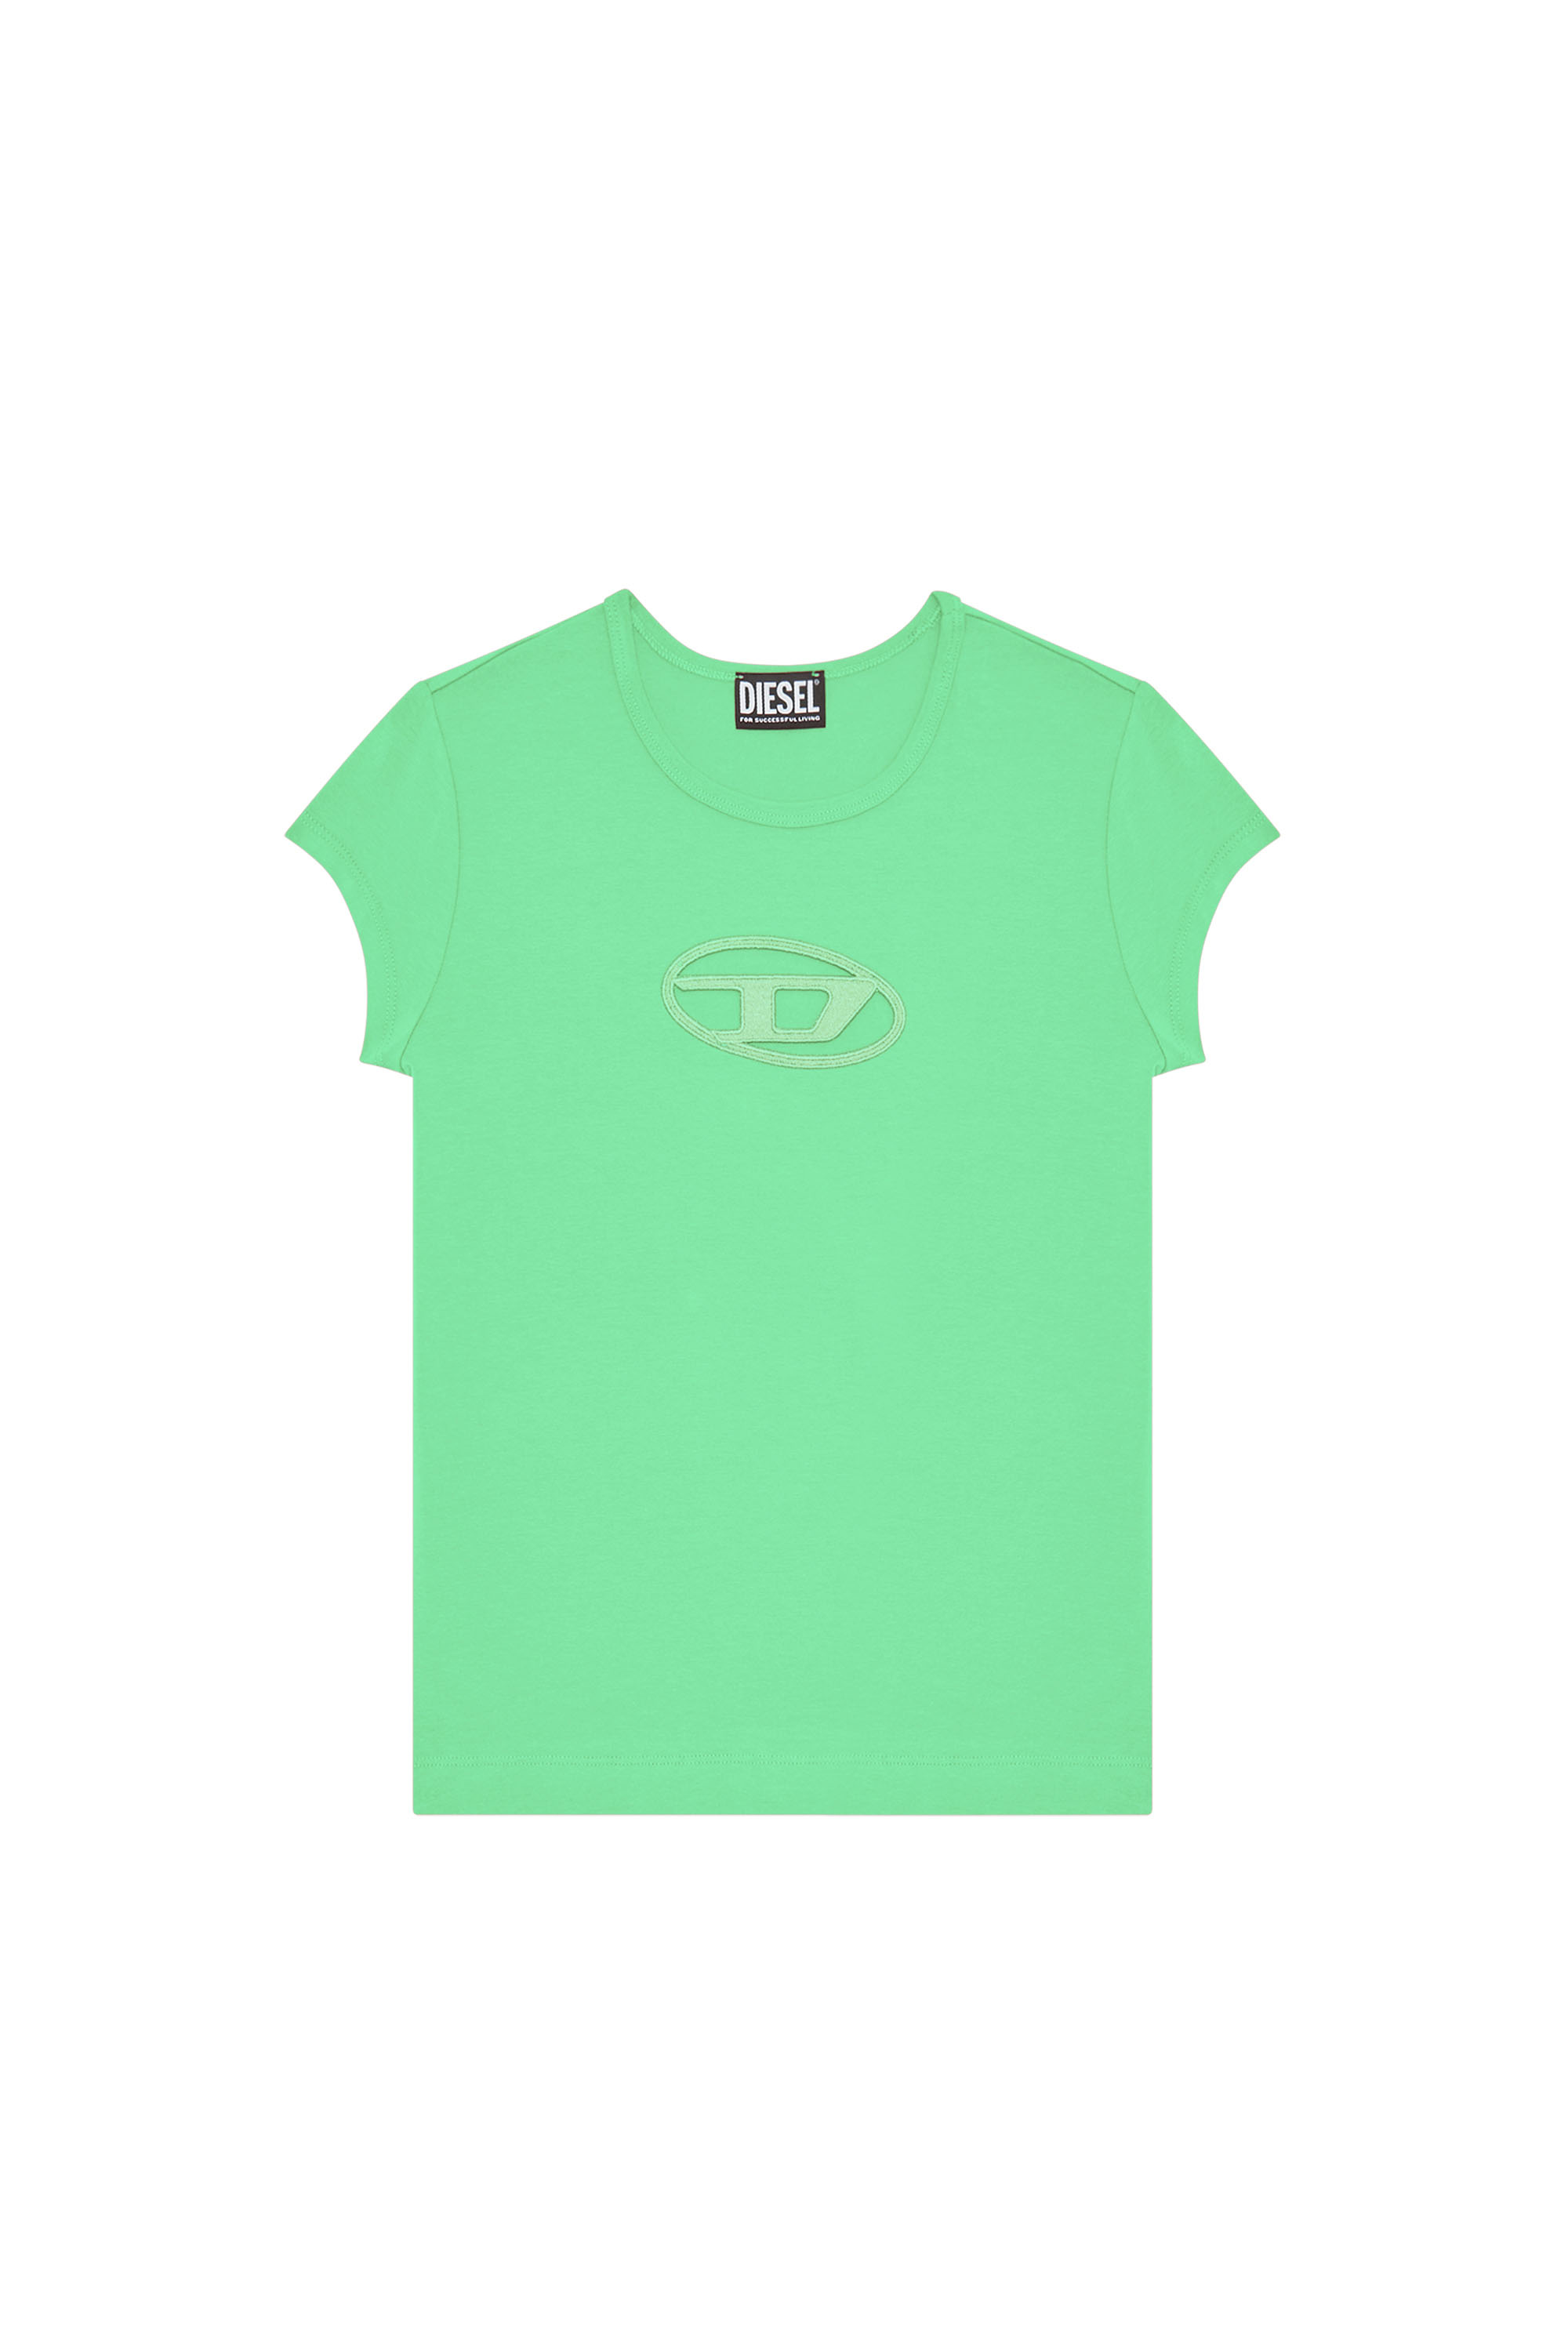 Women's T-shirts: Slim-Fit, Large, Long | Shop on Diesel.com